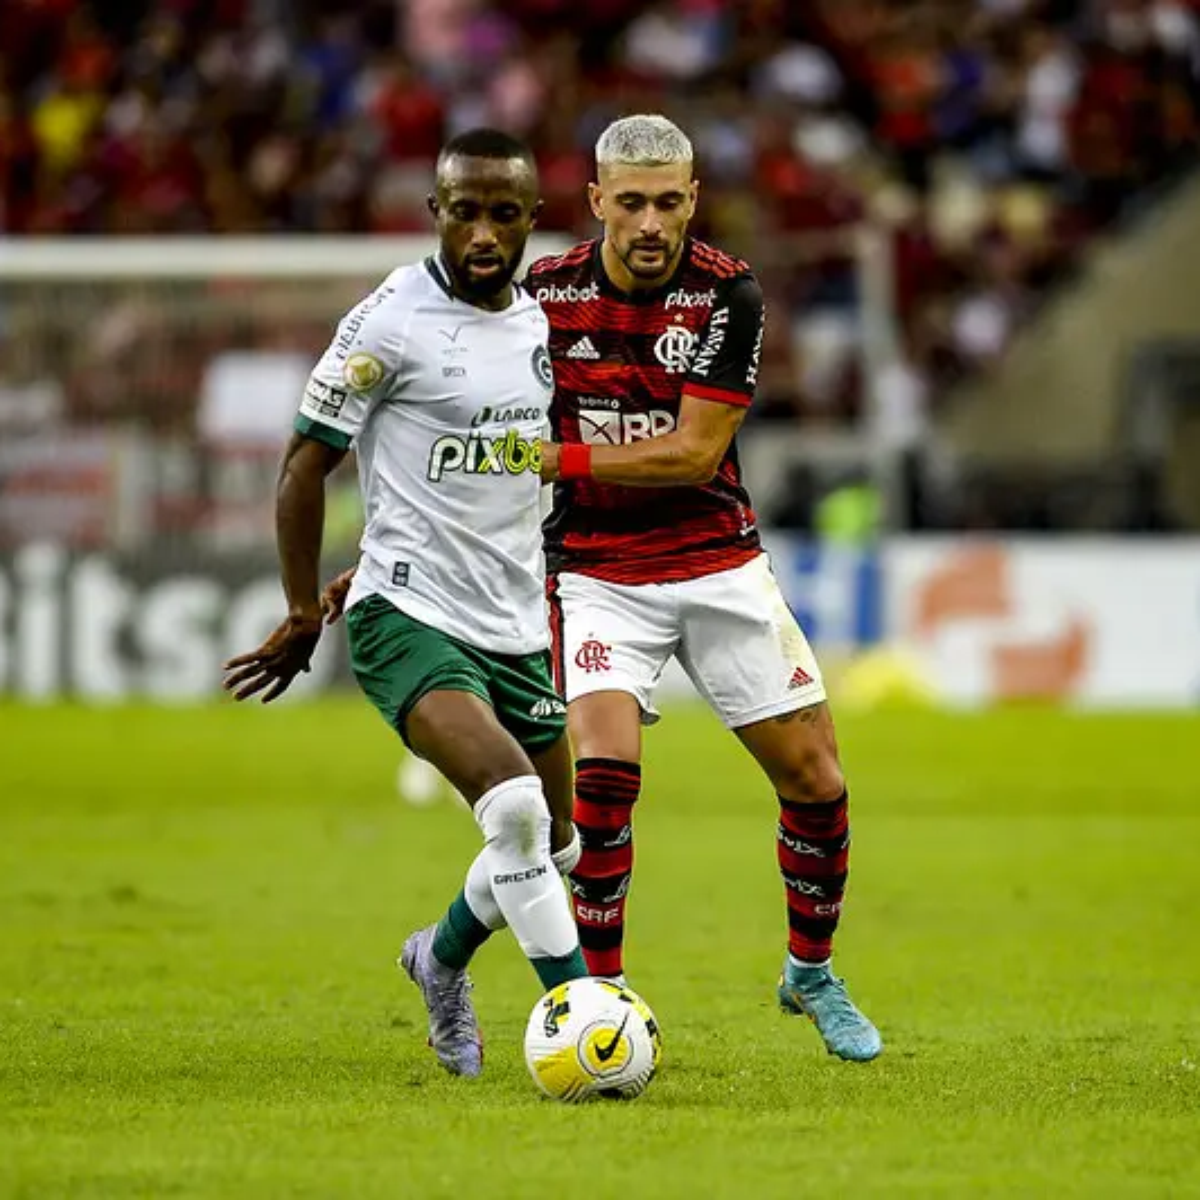 Flamengo x Goiás: onde assistir ao jogo do Brasileirão